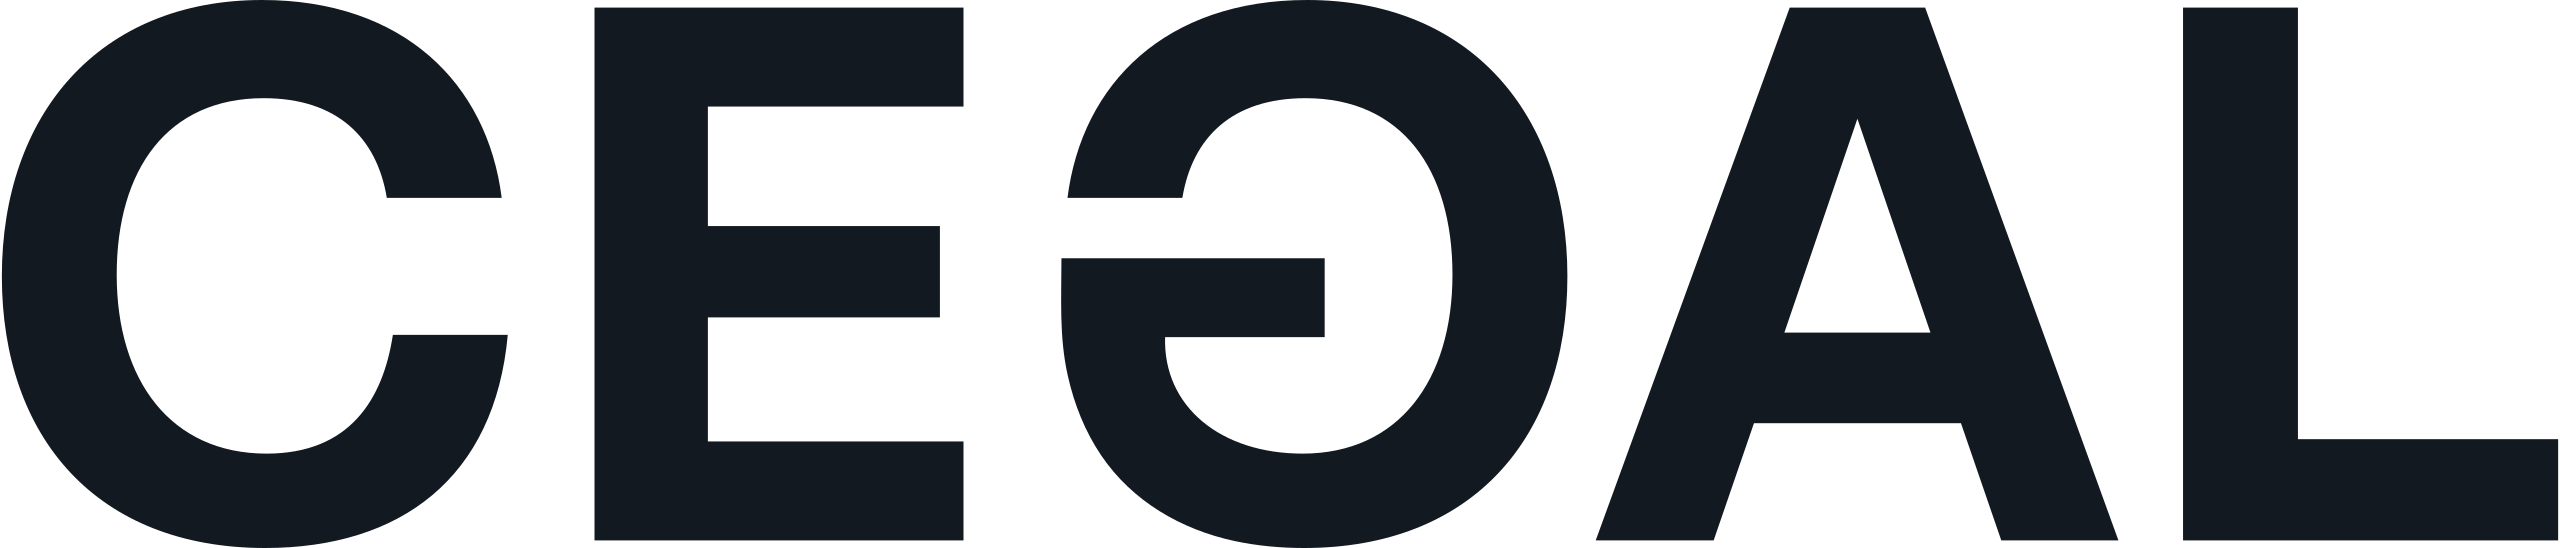 Cegal-black-logo.svg